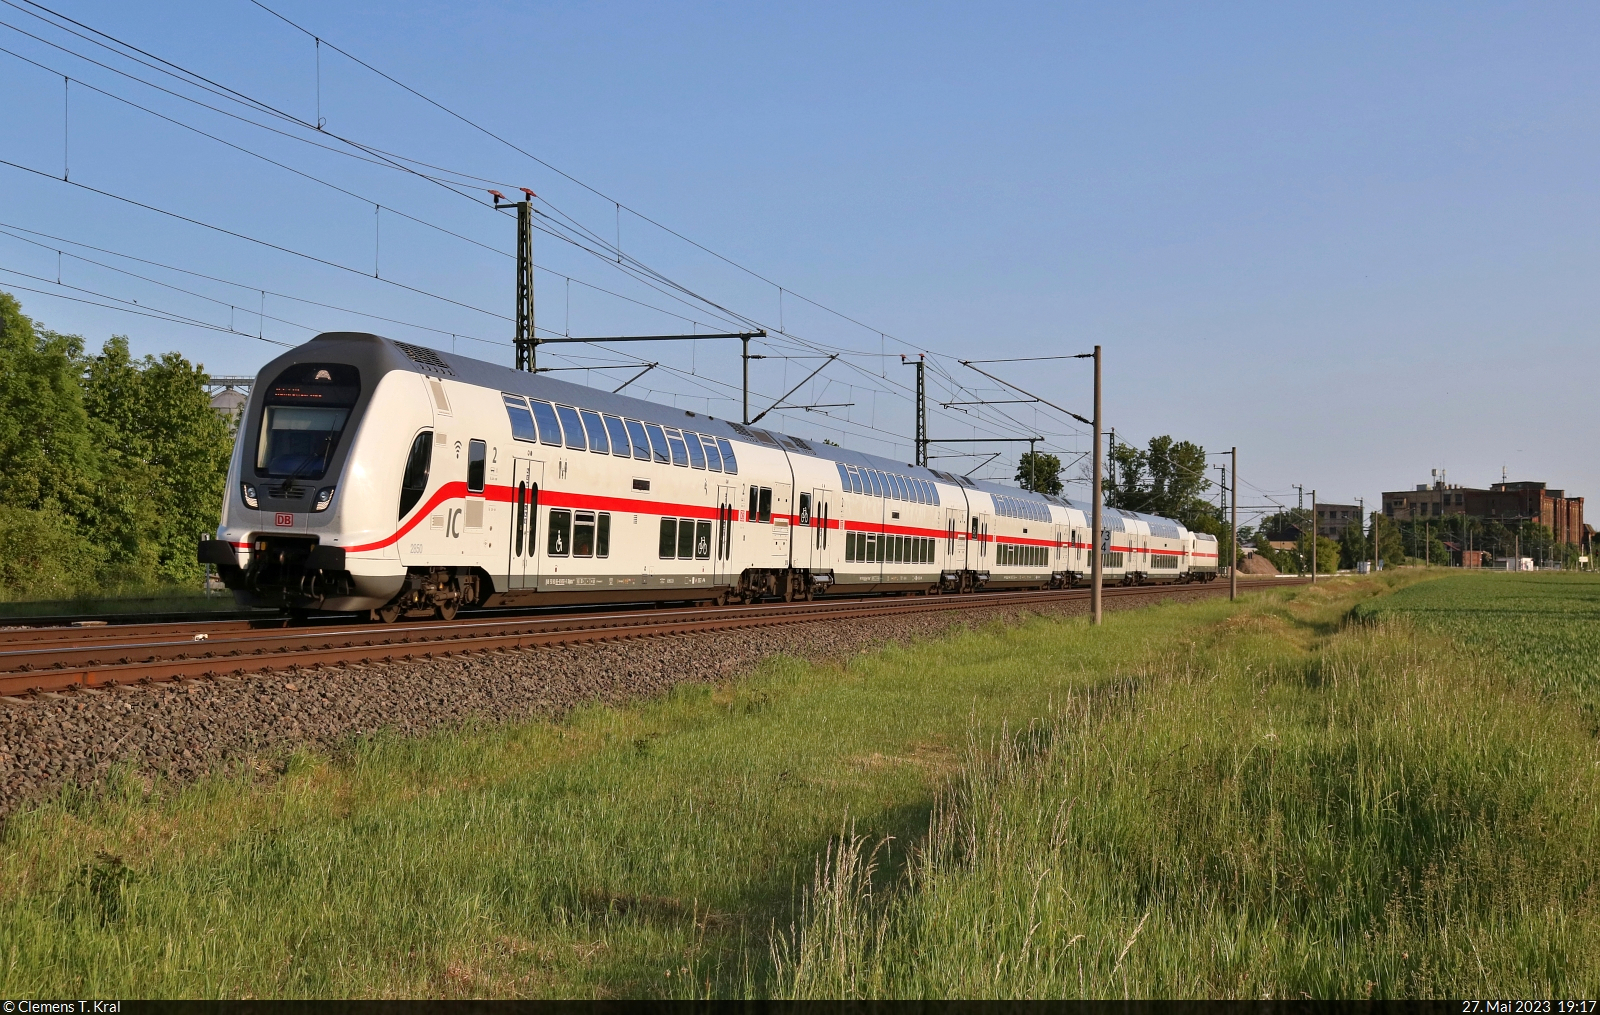 DBpbzfa <sup>668.2</sup> (50 80 86-81 850-9 D-DB) mit Schublok 146 556-6 unterwegs bei Niemberg.

🧰 DB Fernverkehr
🚝 IC 2446 (Linie 55) Leipzig Hbf–Hannover Hbf
🕓 27.5.2023 | 19:17 Uhr